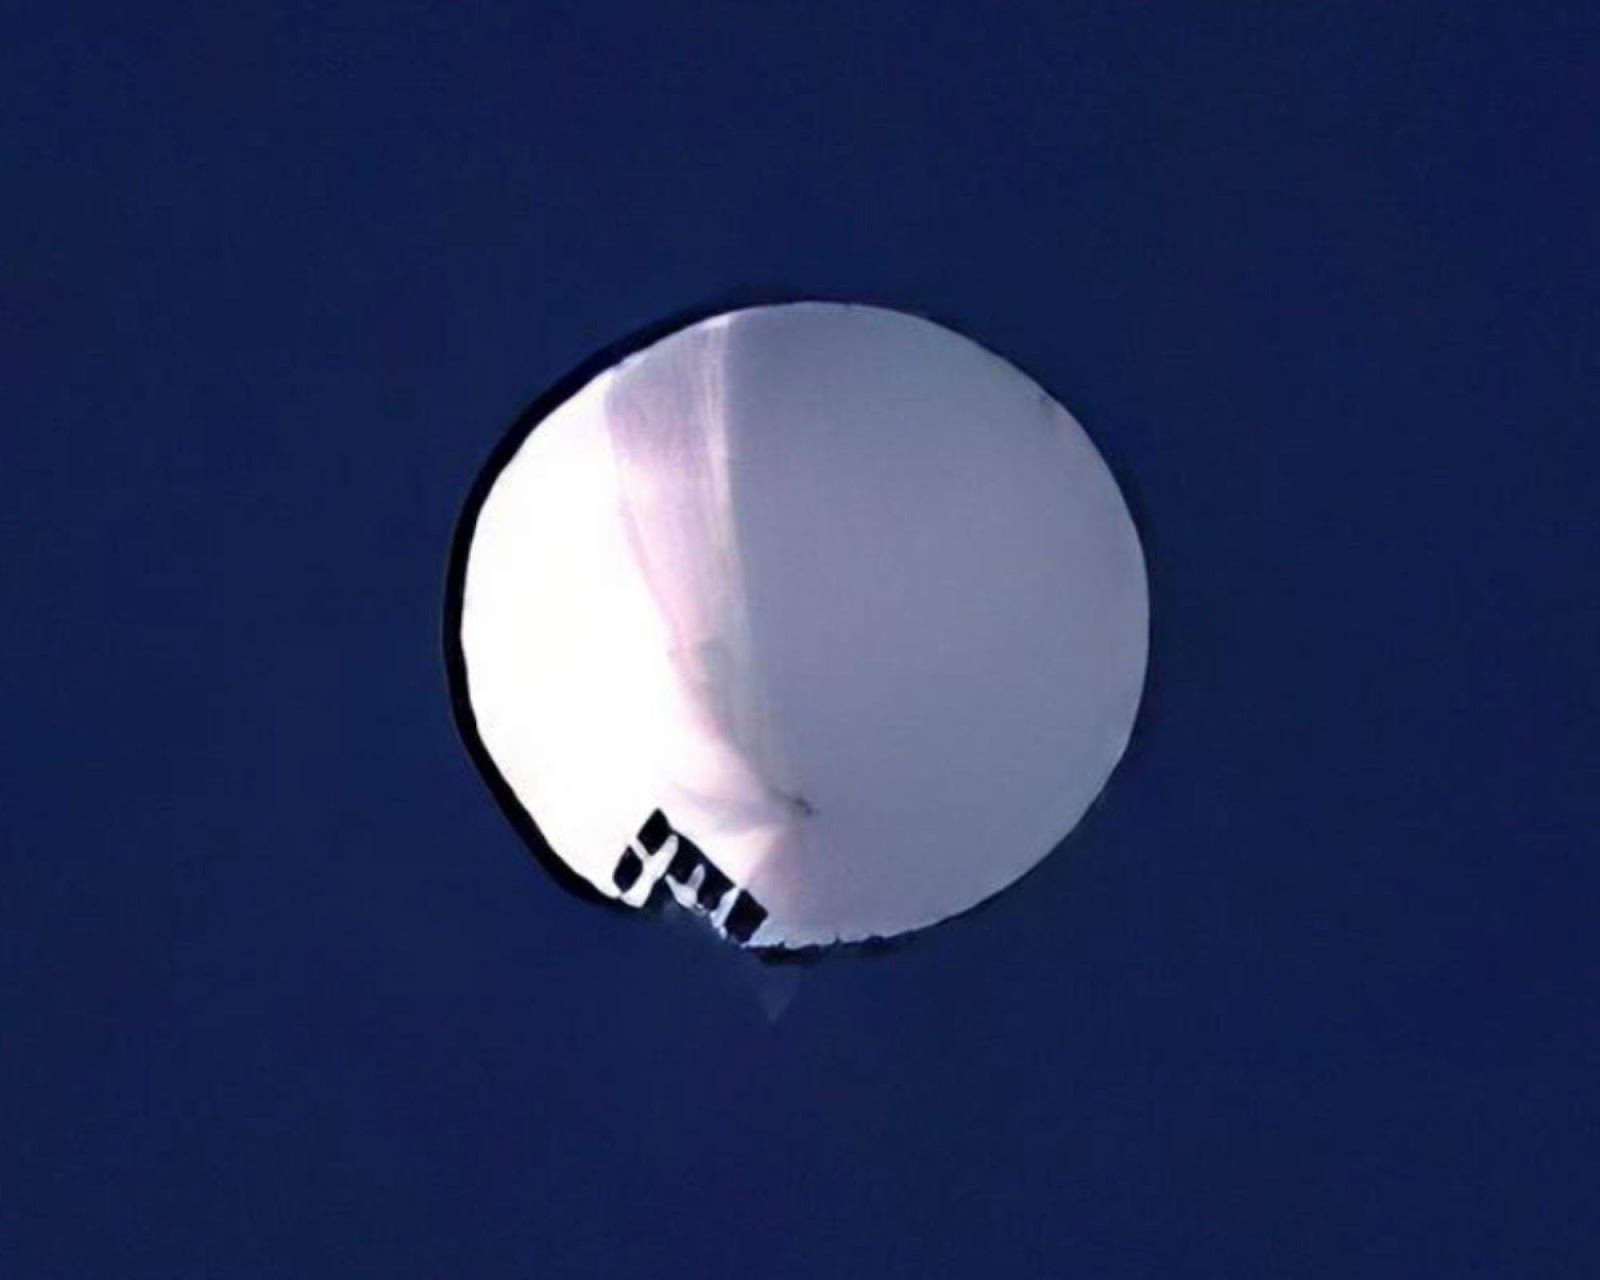 Chinese surveillance balloon